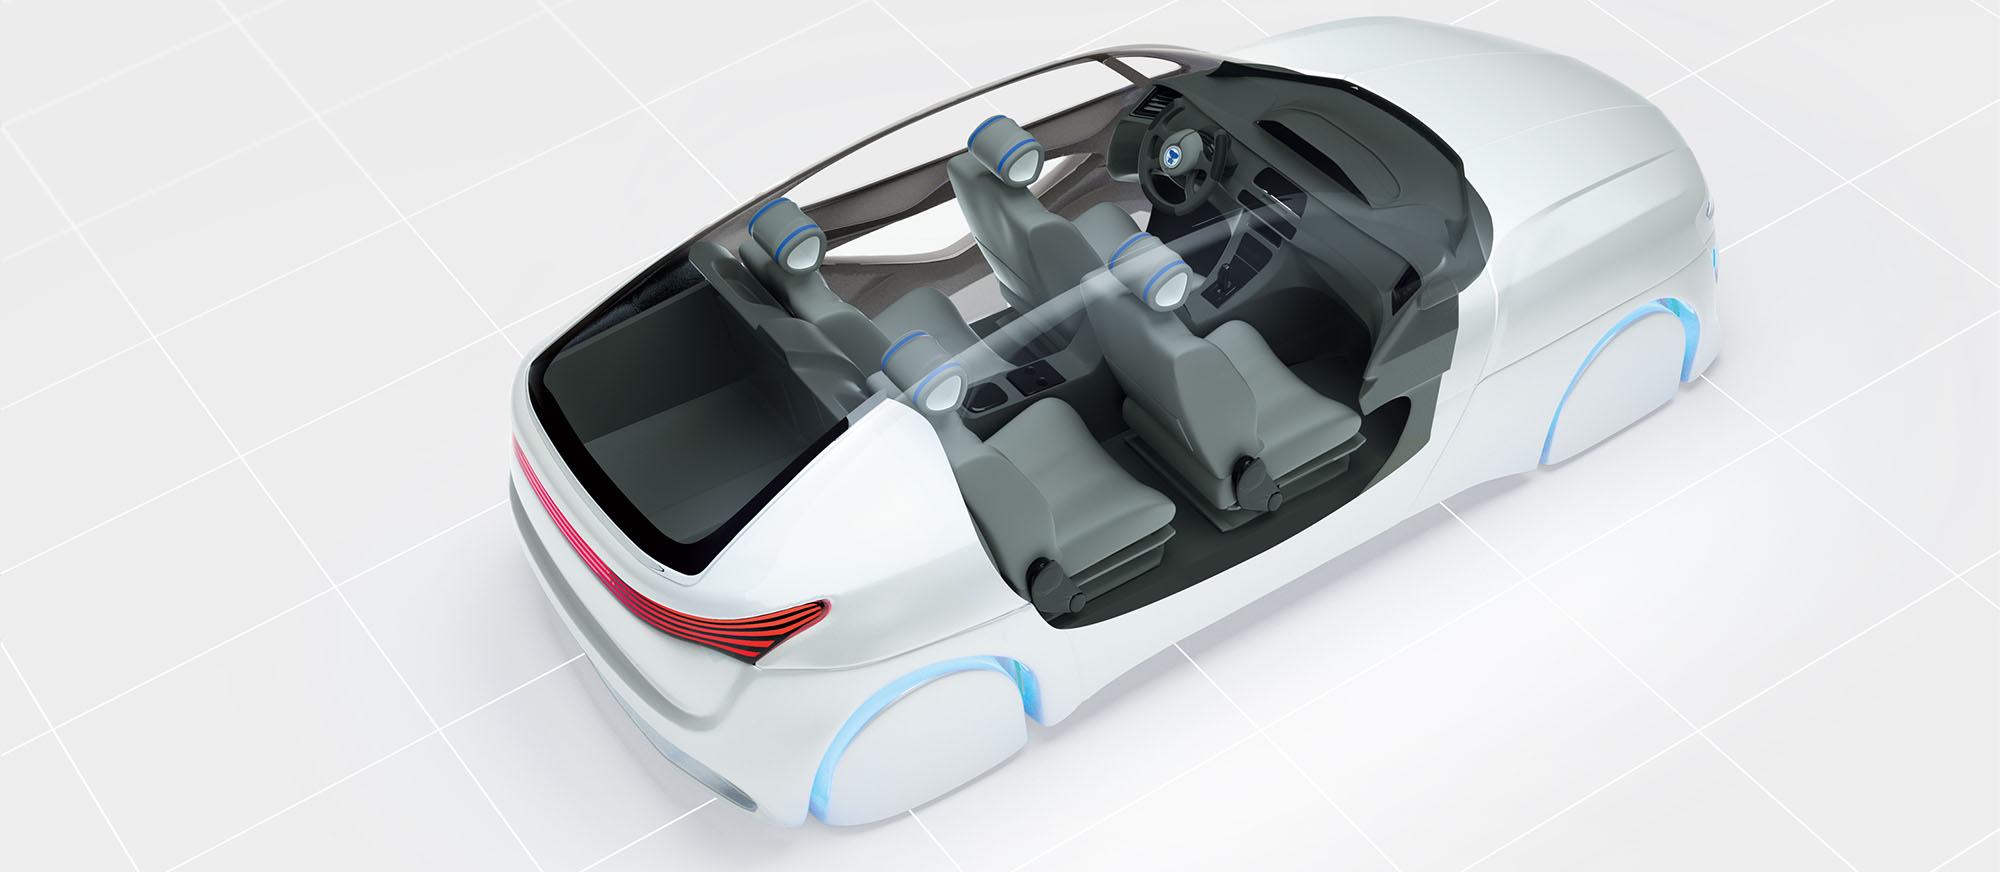 Computergrafik eines weißen Autos und Fahrzeuginnenraum, leicht futuristische Darstellung